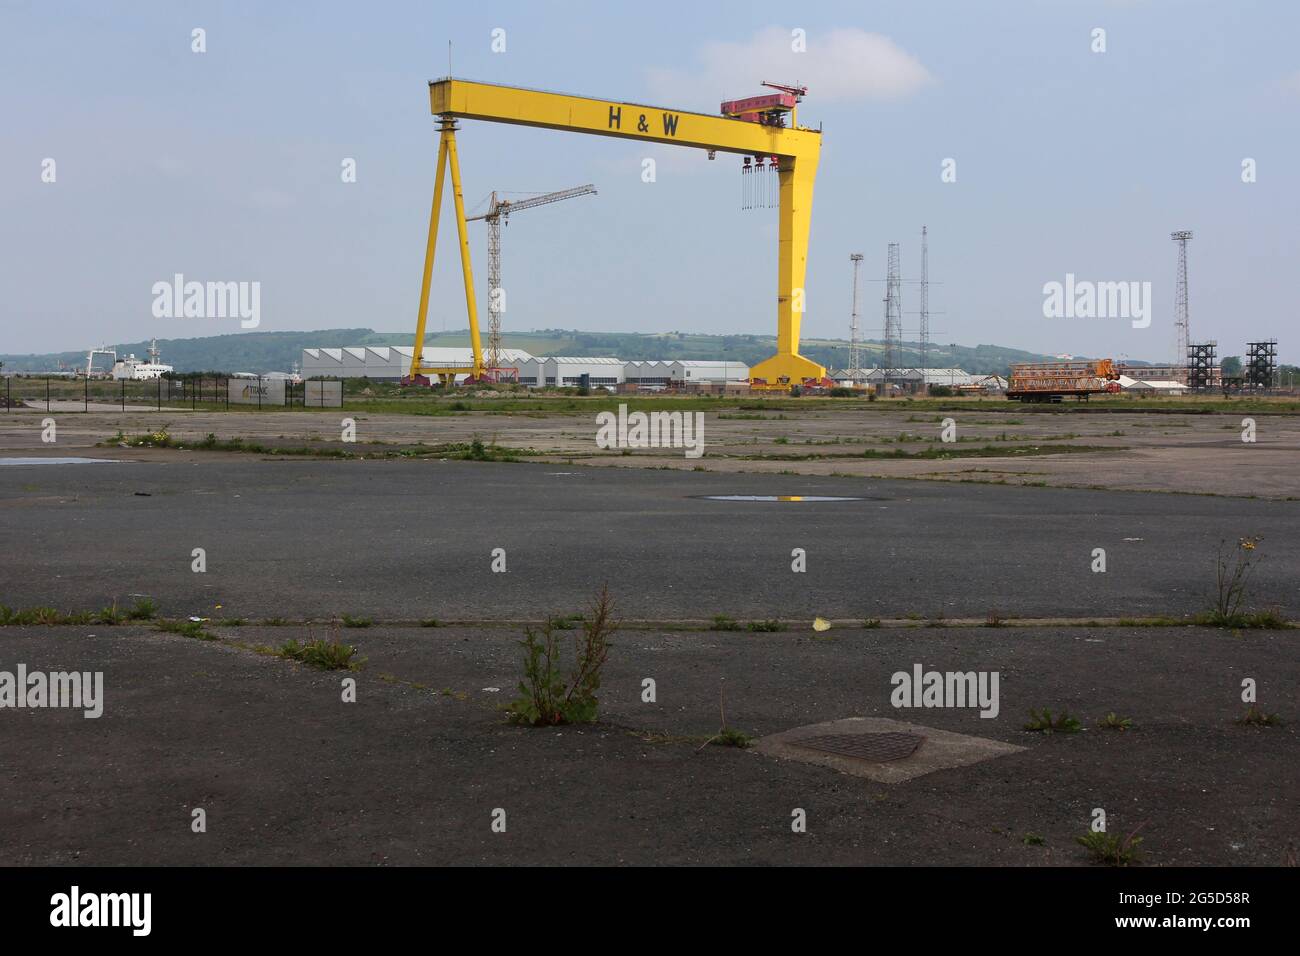 L'une des deux grues géantes à portique de construction navale, construite par Krupp et connue sous le nom de Samson et Goliath, au chantier naval Harland et Wolff à Belfast Banque D'Images